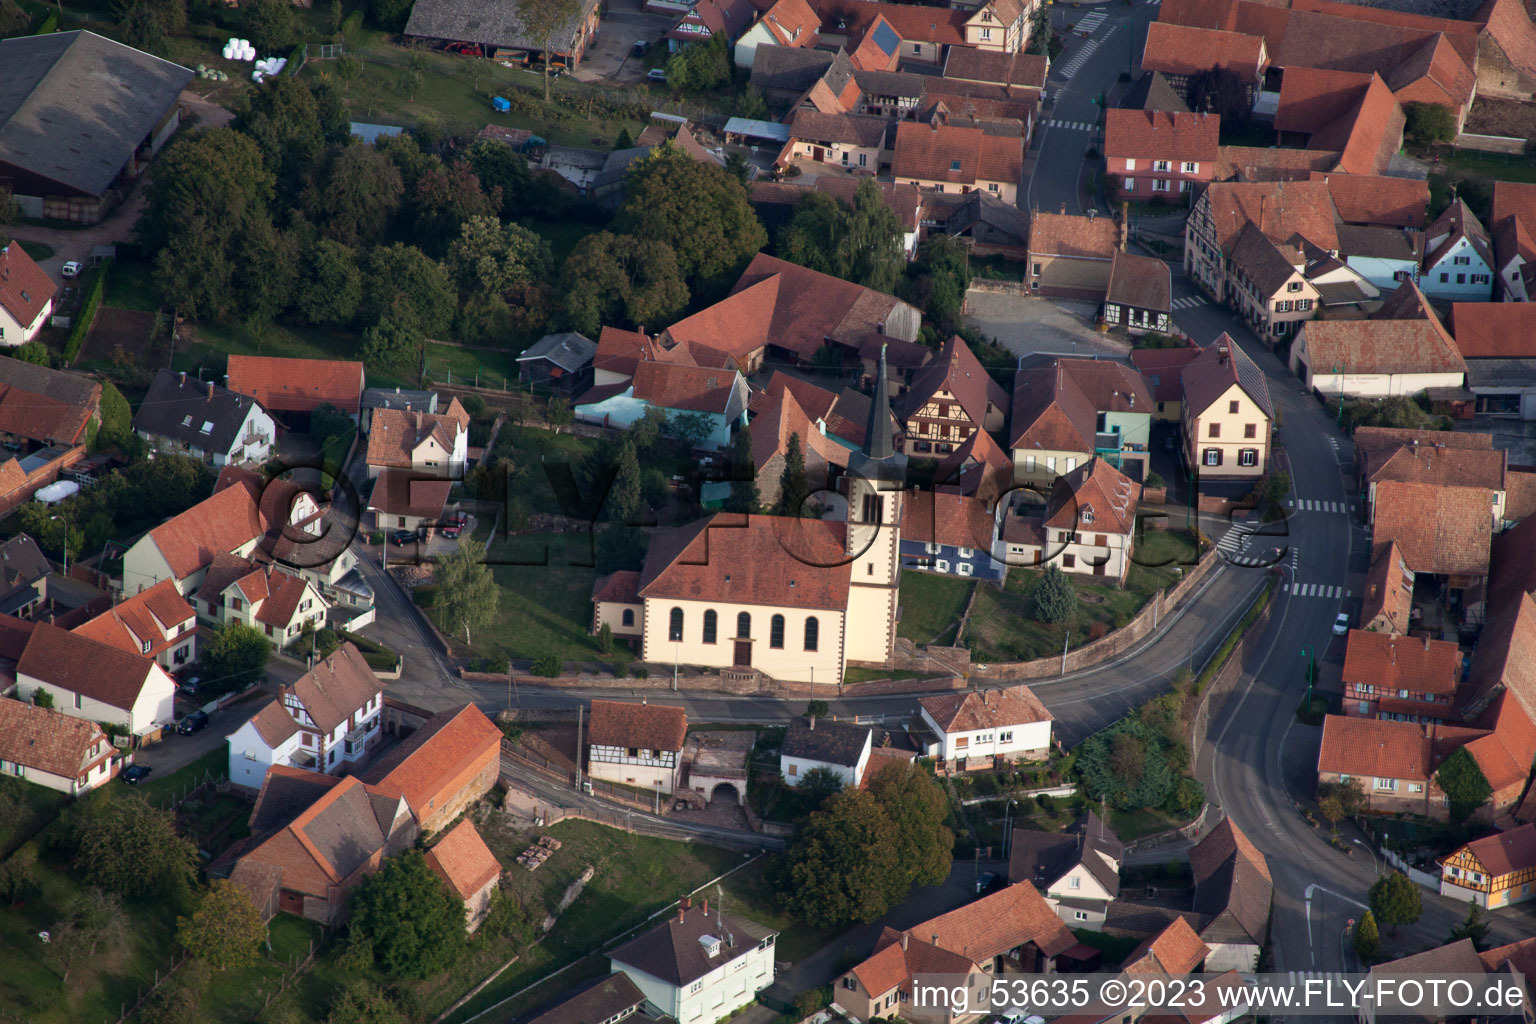 Mietesheim im Bundesland Bas-Rhin, Frankreich aus der Luft betrachtet